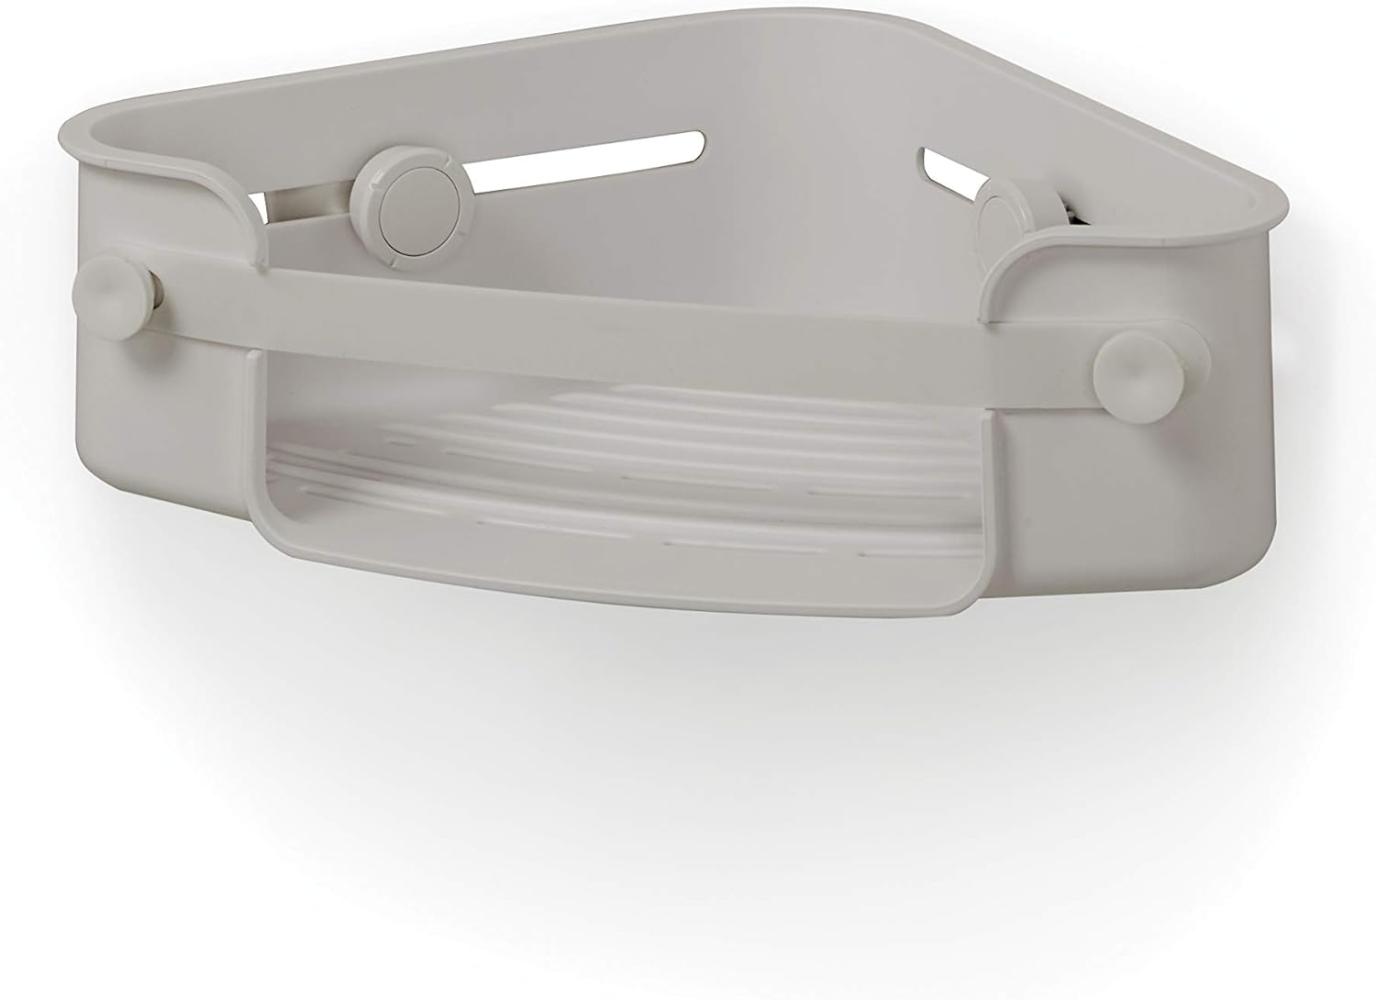 Umbra Eckduschablage Flex, verstellbares Duschregal mit Gel-Lock, Kunststoff, Silikon, Grau, 16 x 26 cm, 1004435-918 Bild 1